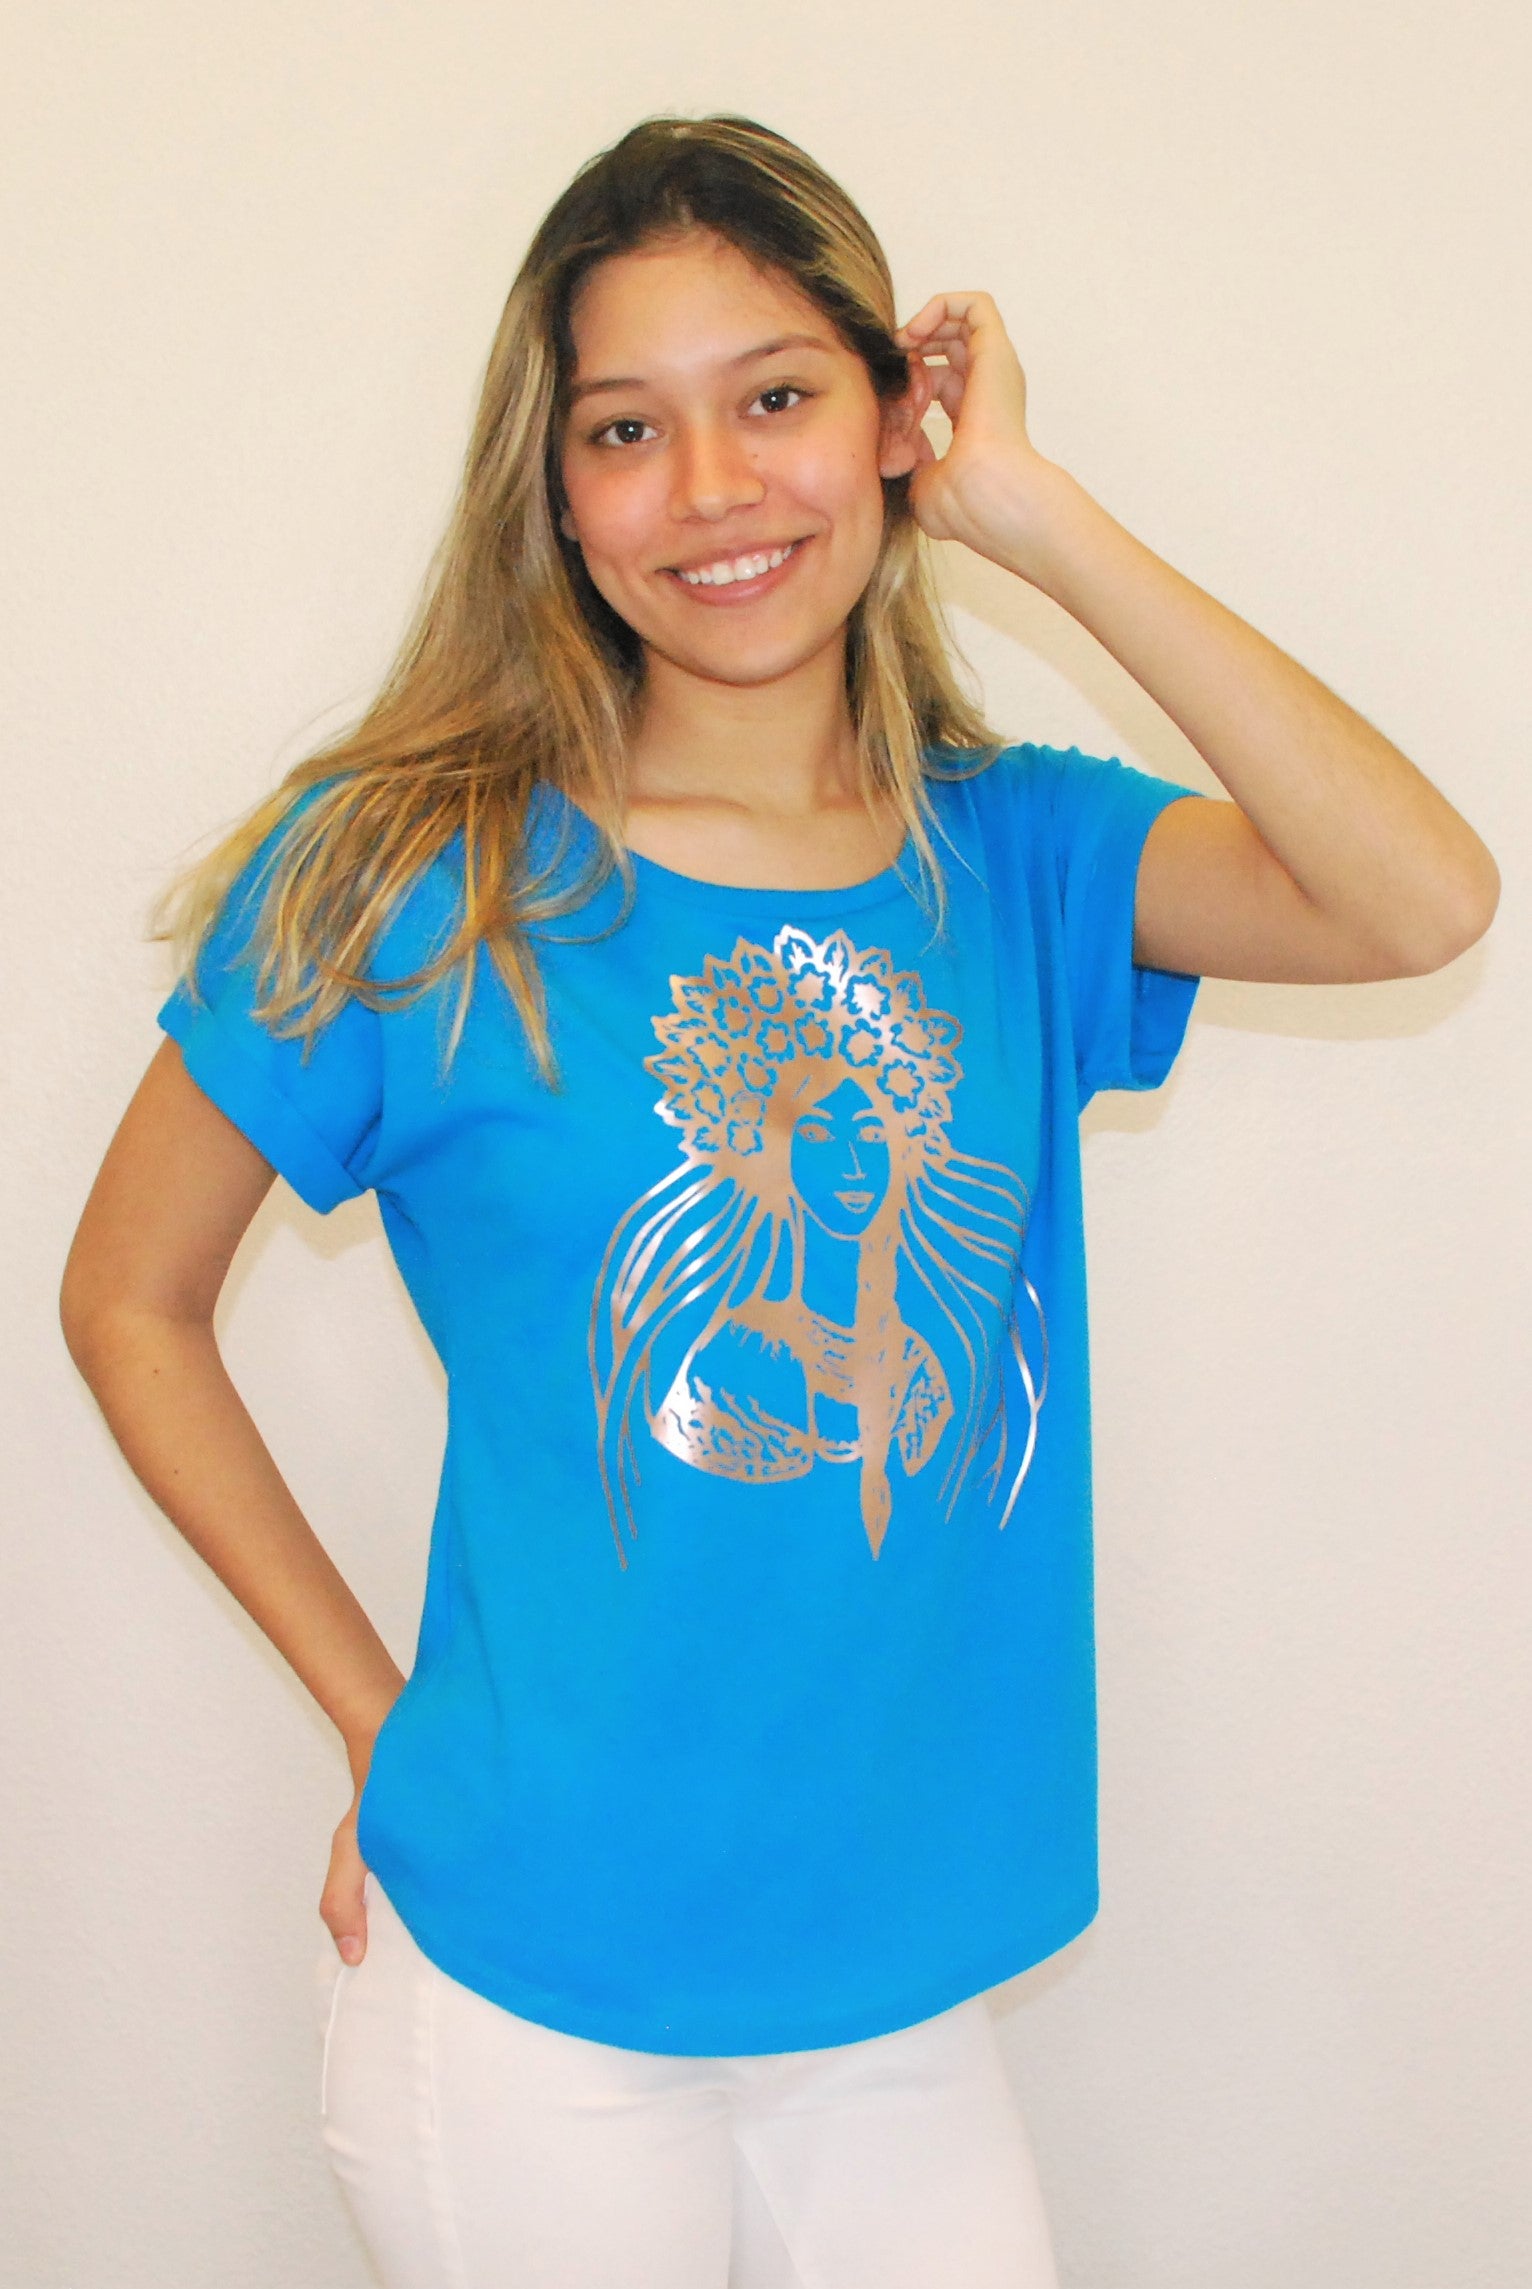 Ladies' Dolman shirt "Krasa" turquoise